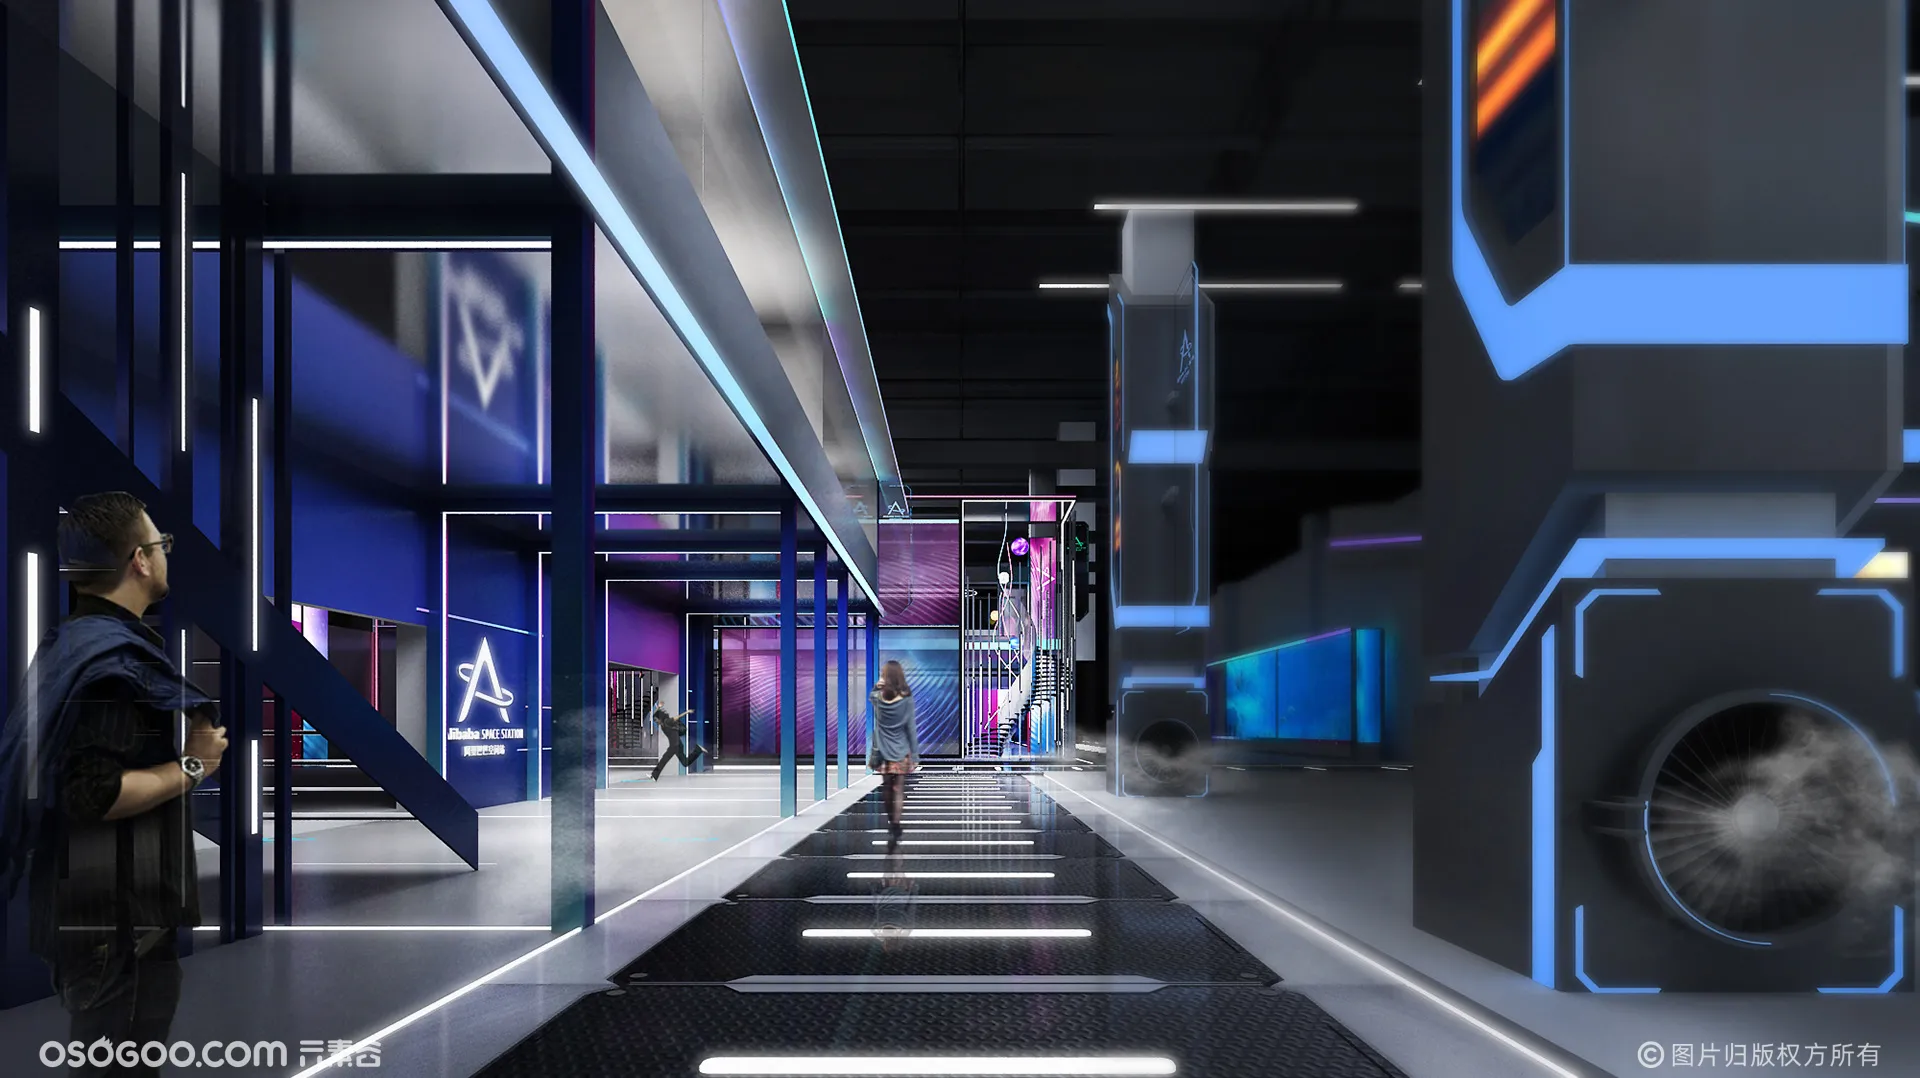 阿里巴巴空间站—门头氛围与前期设计方案